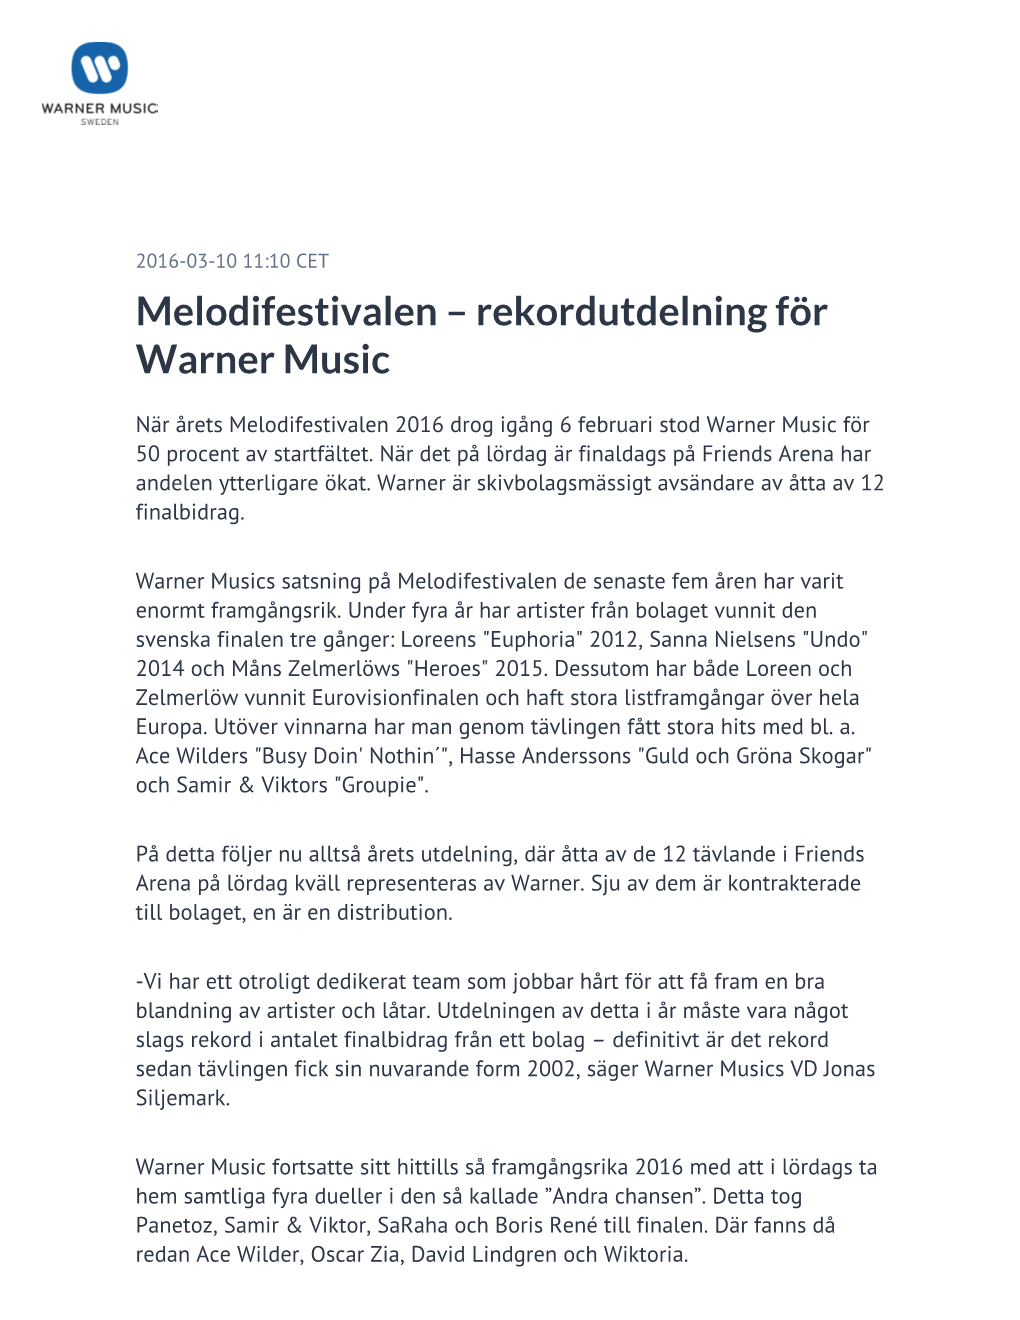 Melodifestivalen – Rekordutdelning För Warner Music